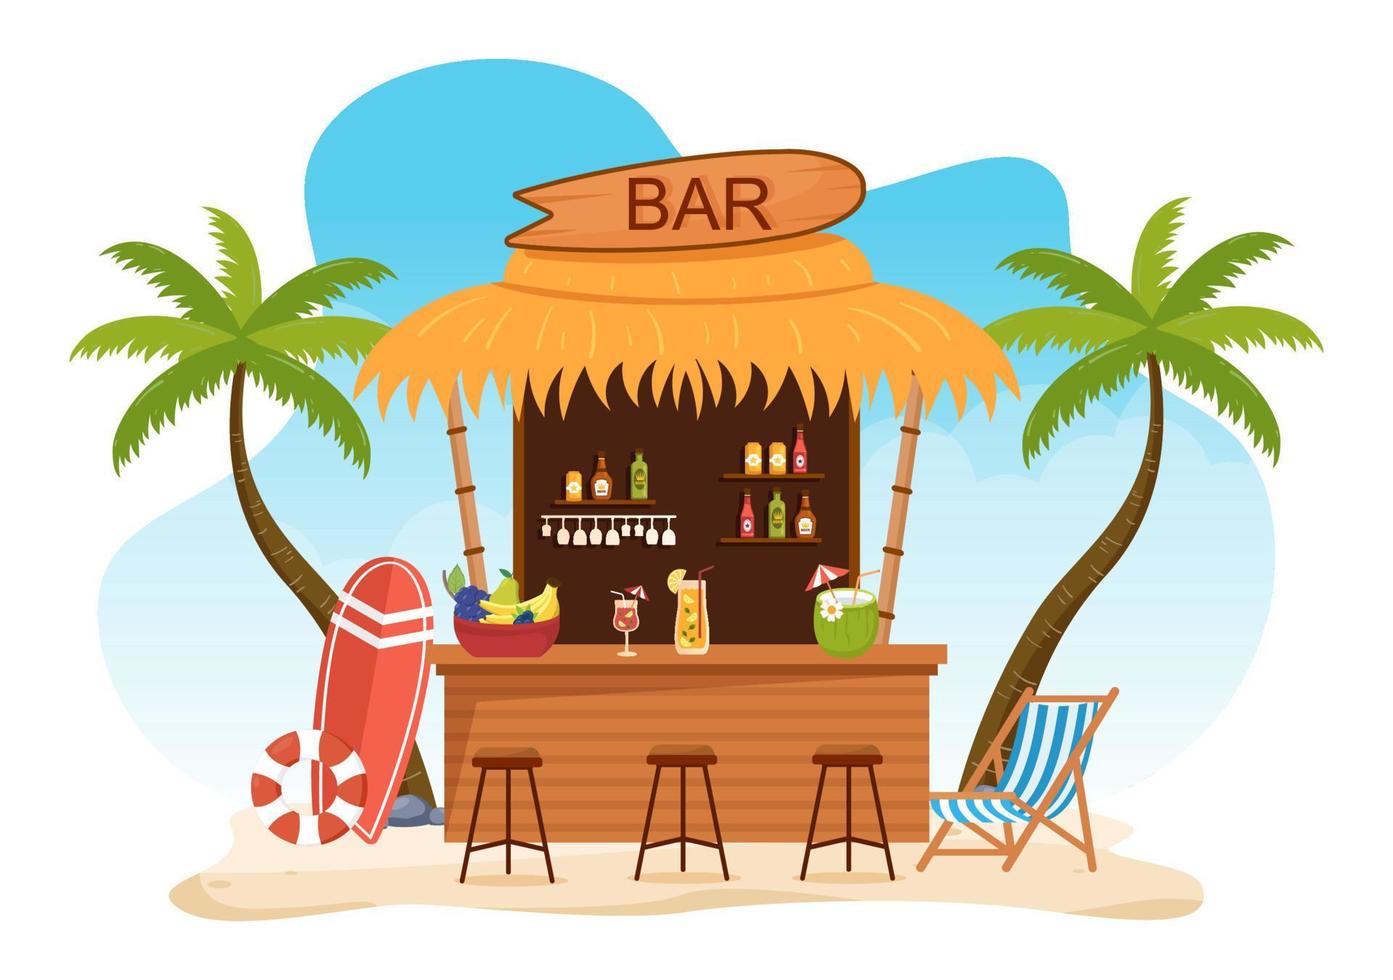 bar tropical ou pub na praia com garrafas de bebidas alcoólicas, barman, mesa, interior e cadeiras à beira-mar em ilustração plana dos desenhos animados vetor